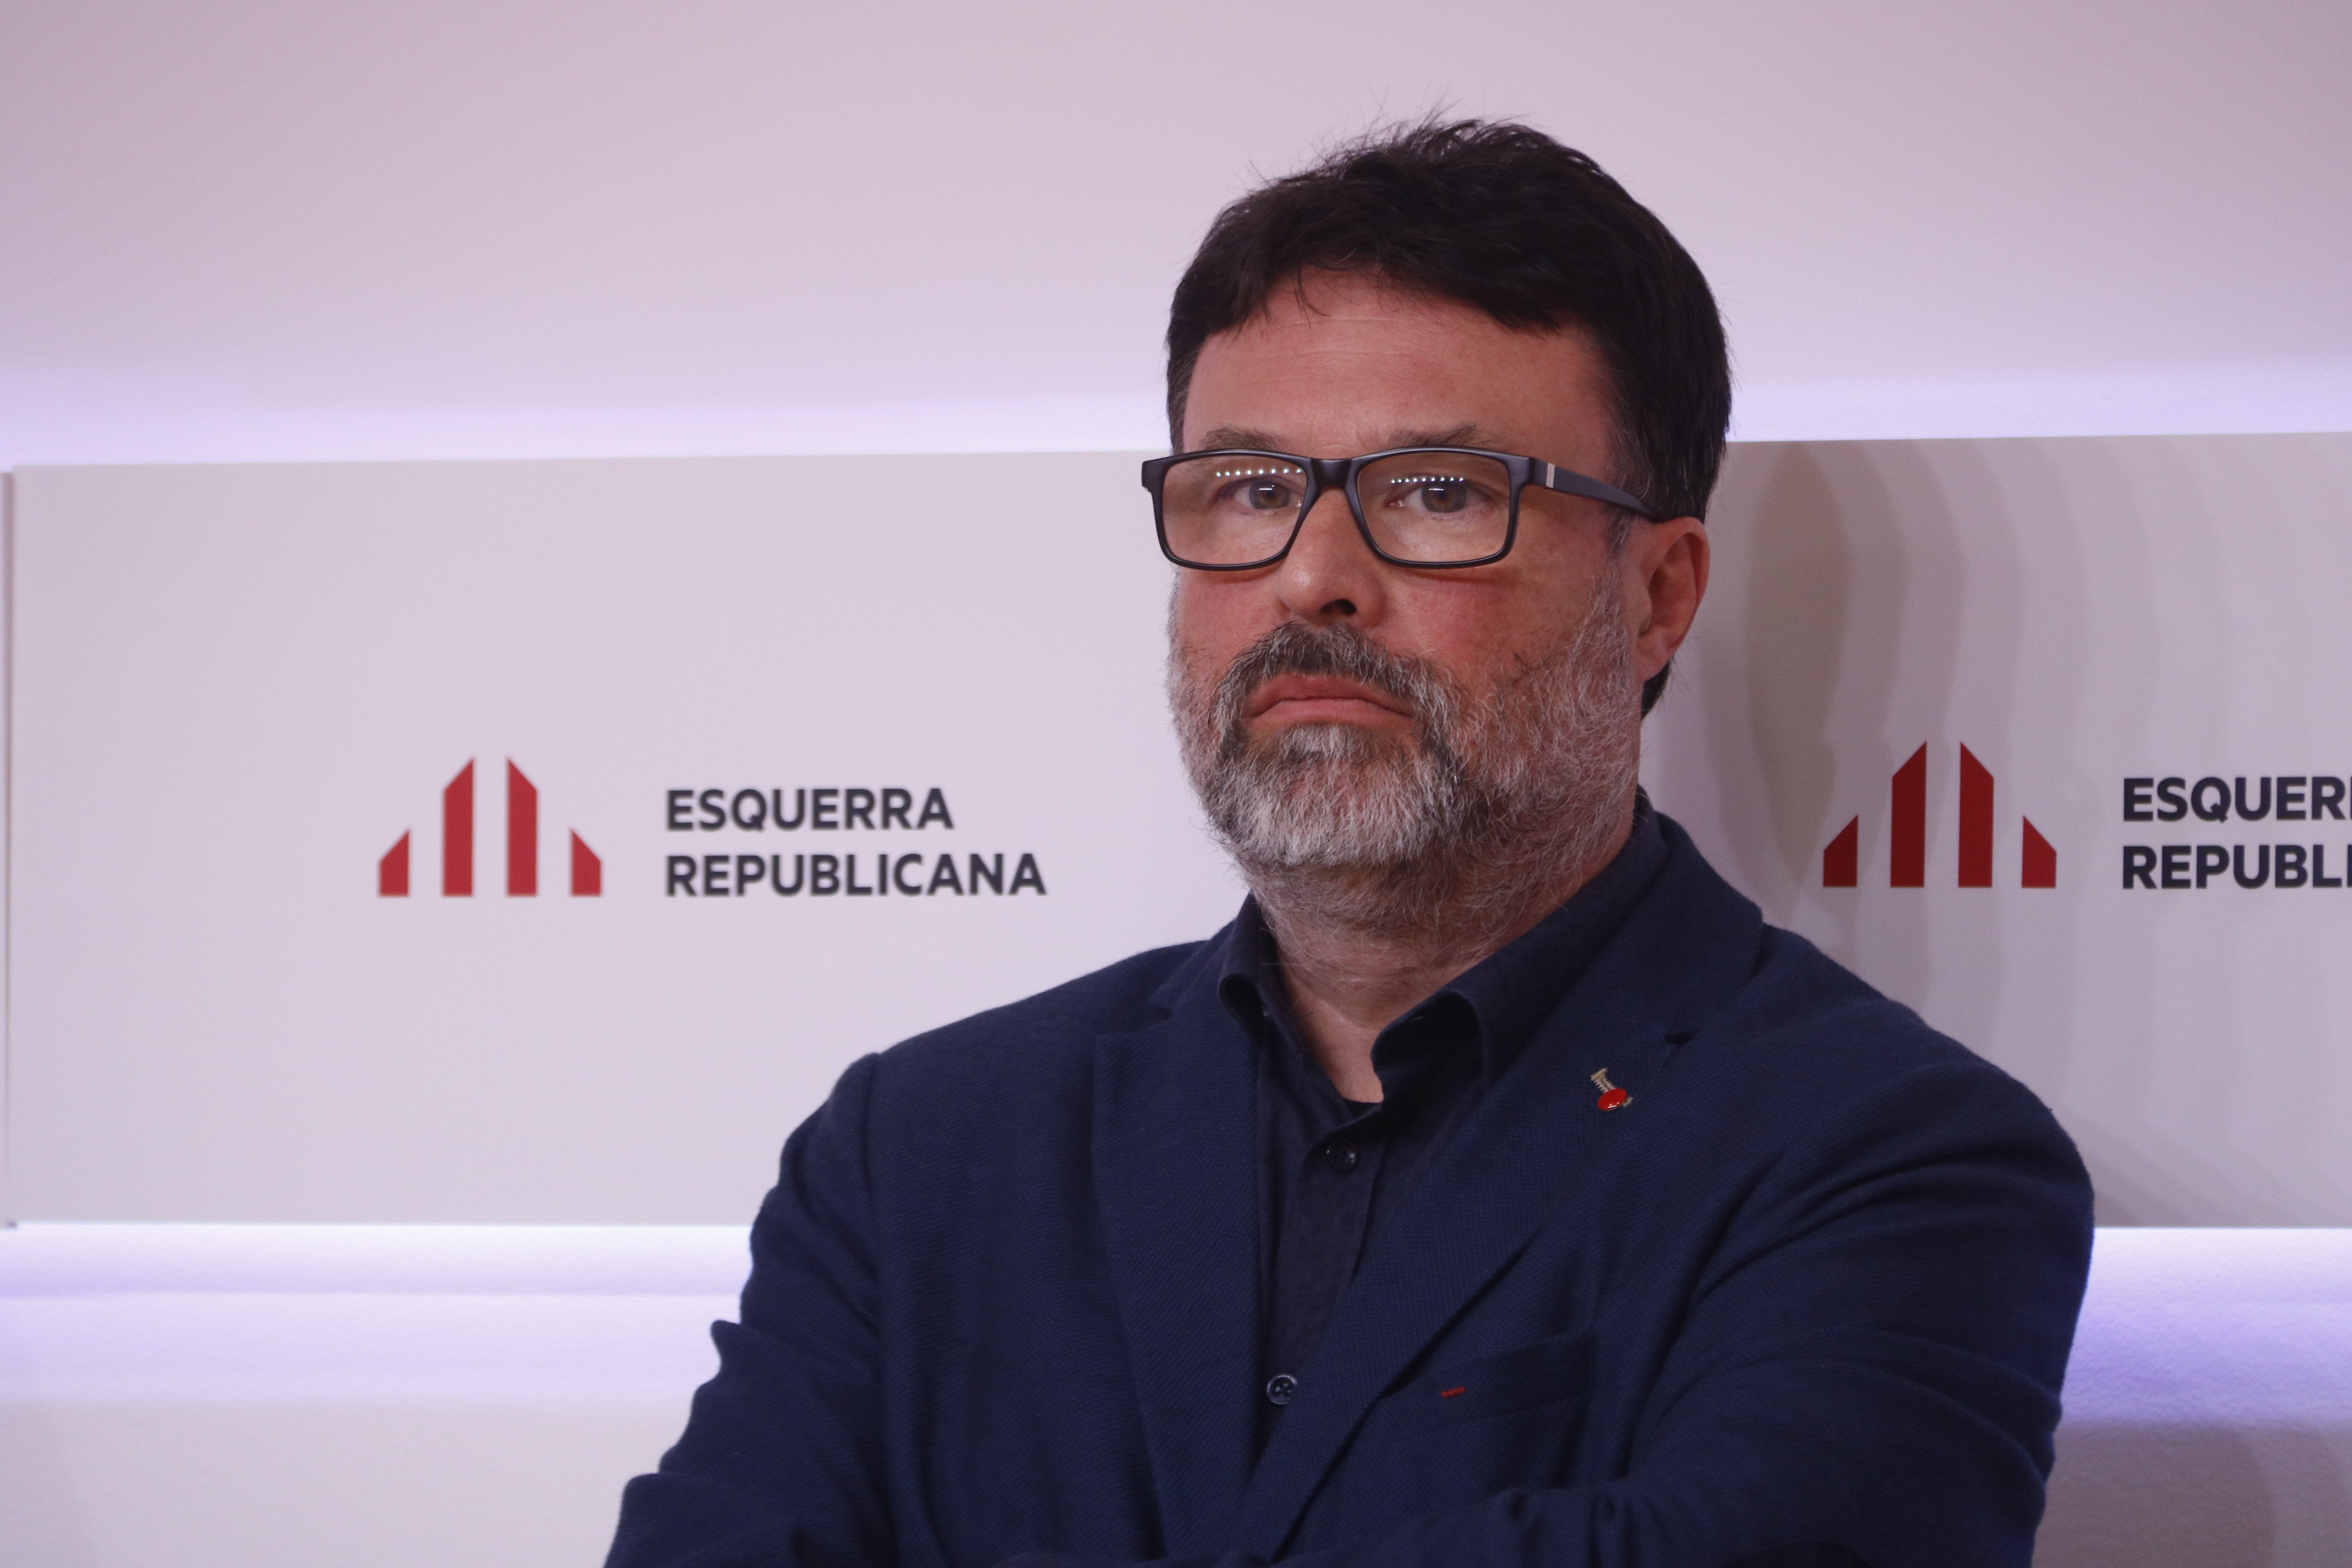 Nuet renuncia al acta de diputado de los comuns: "Estoy por la República catalana"